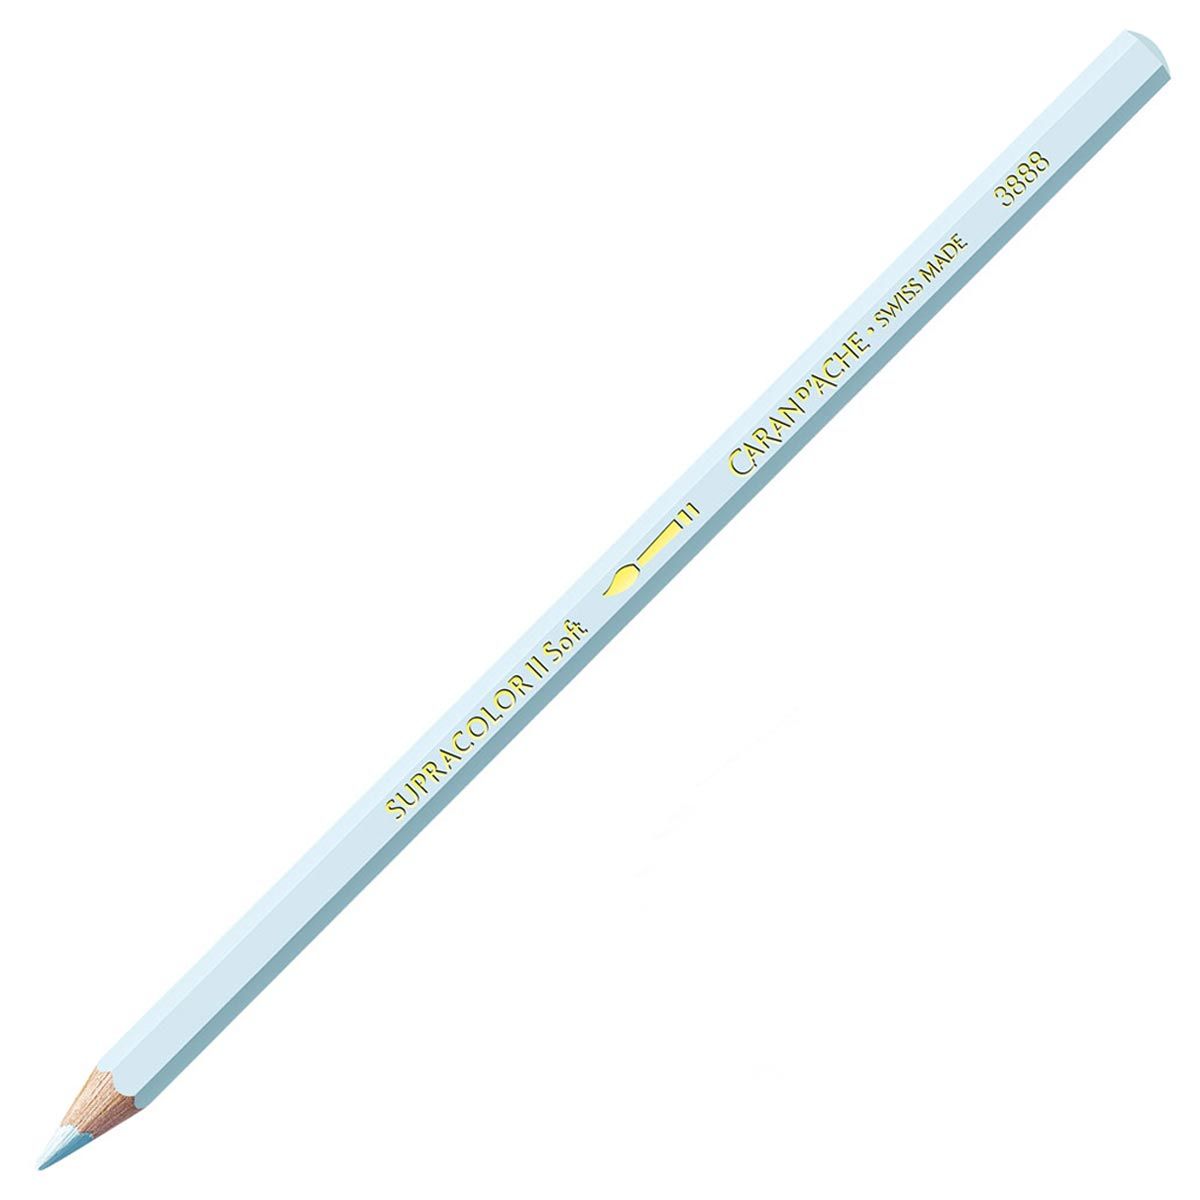 Caran d'Ache Supracolor ll Soft Aquarelle Pencil Silver Grey 002